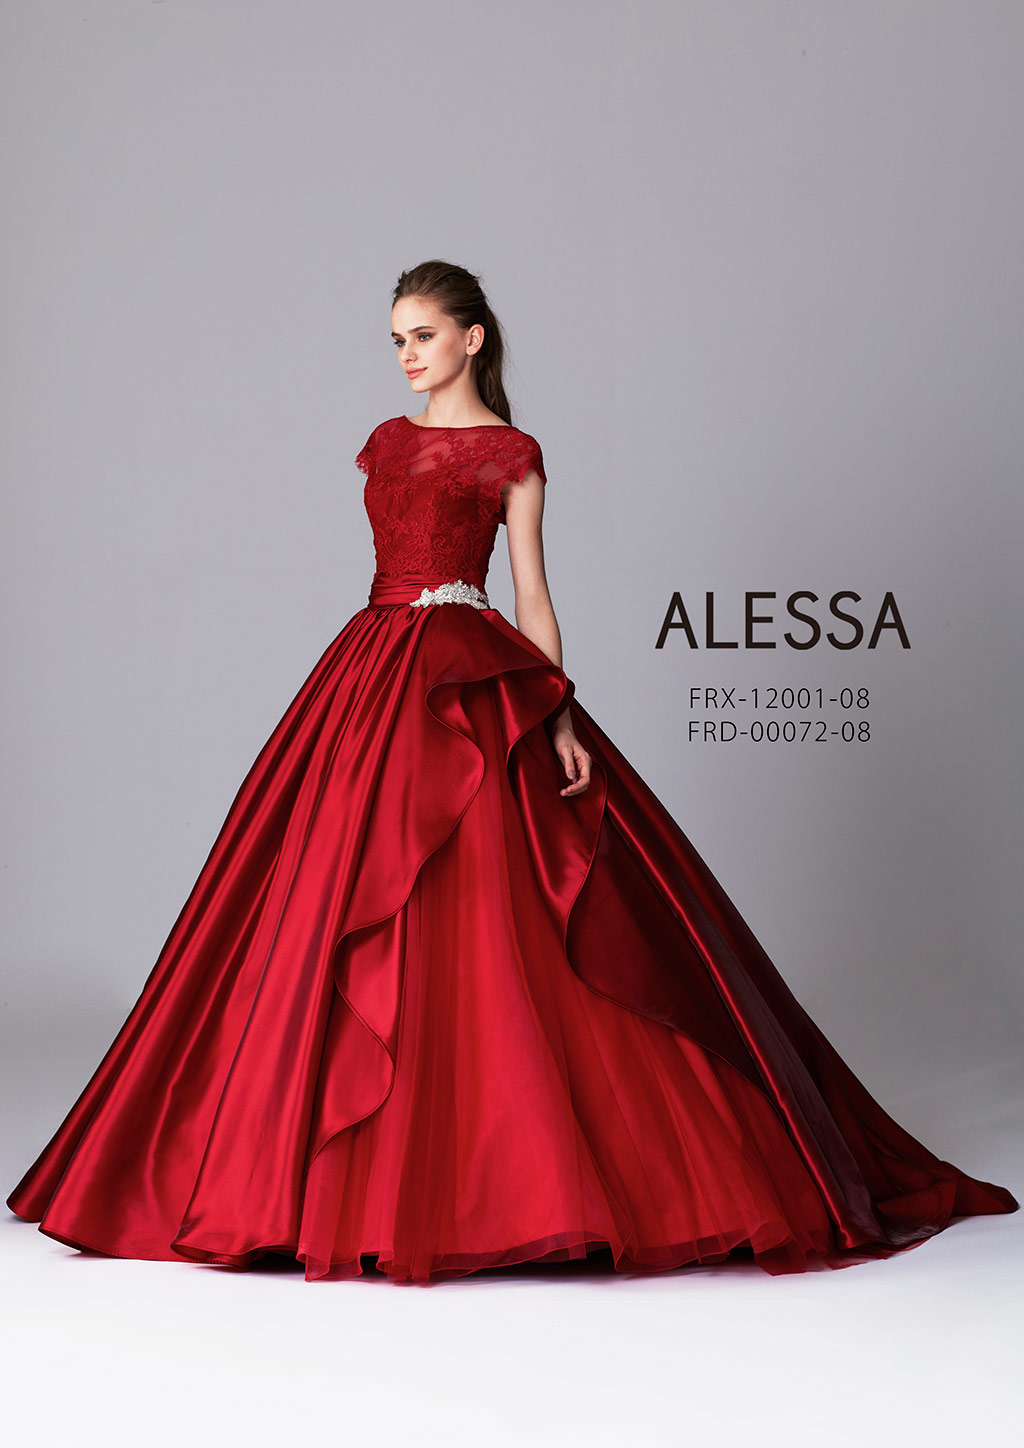 ALESSA FRD-00072